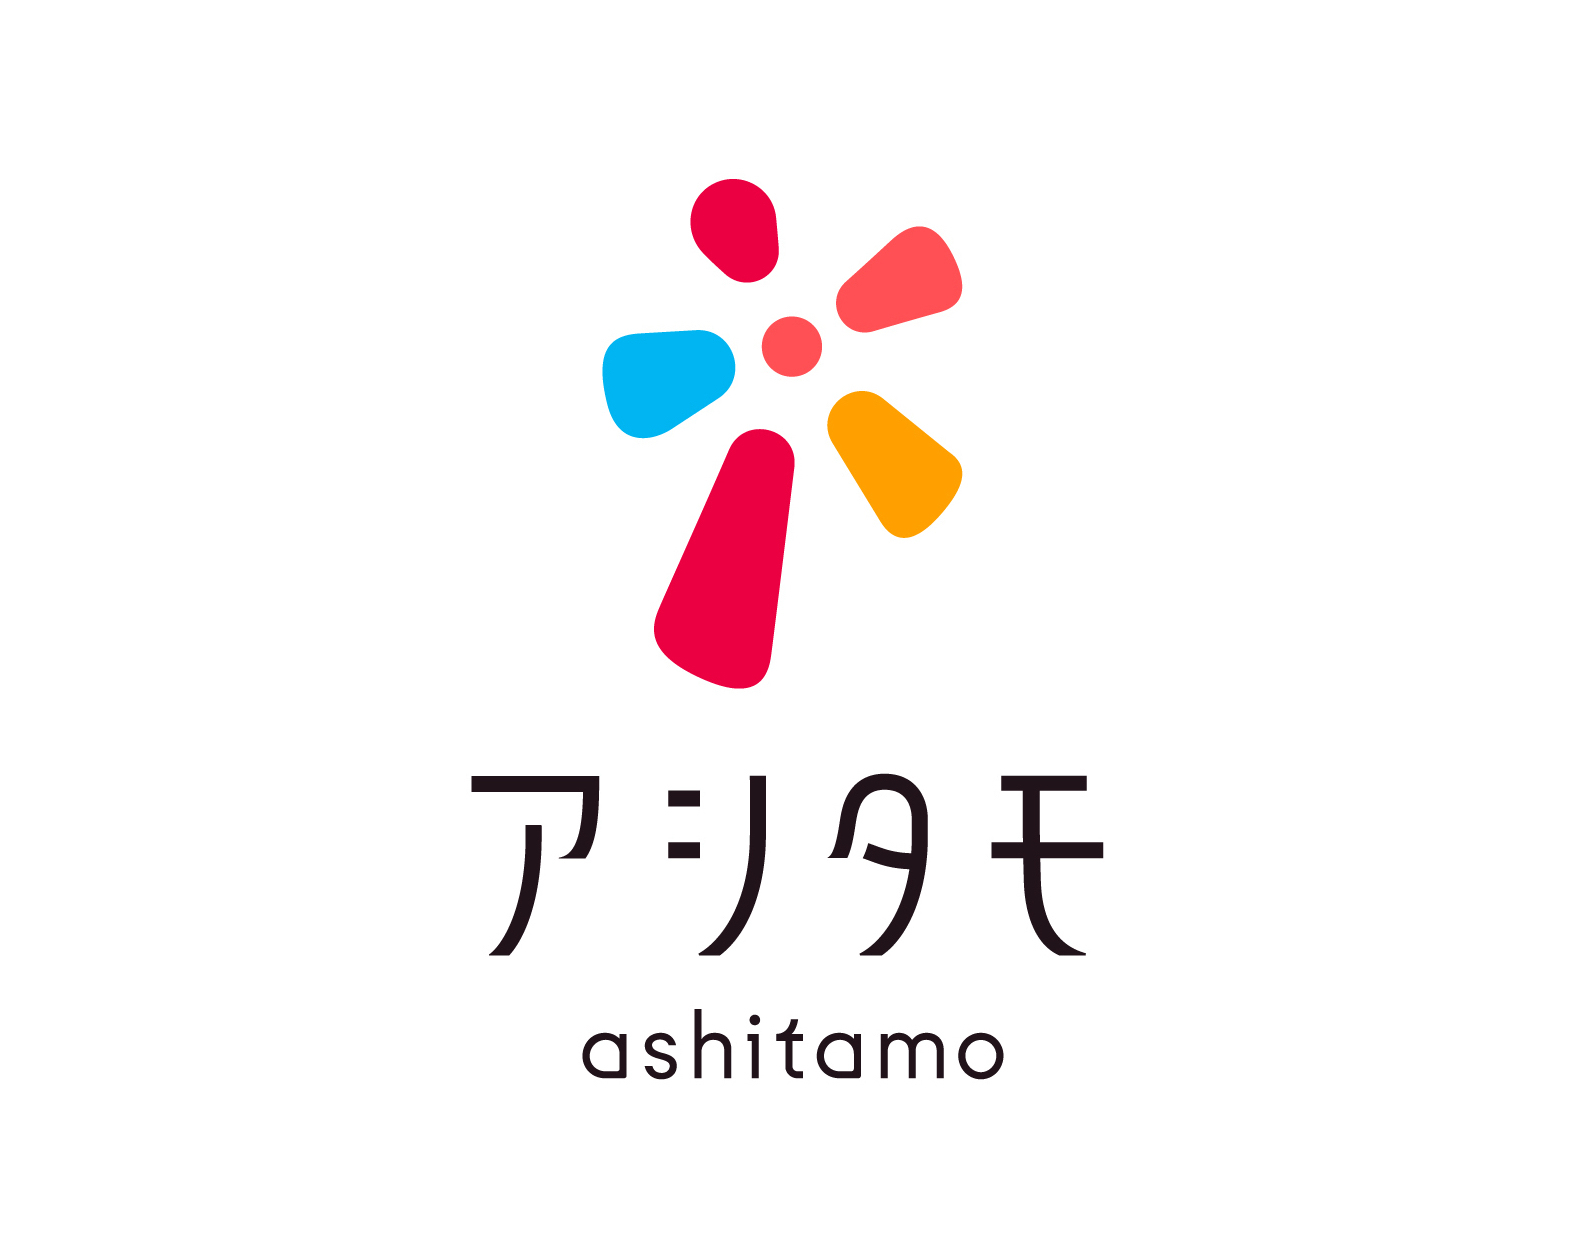 ashitamo